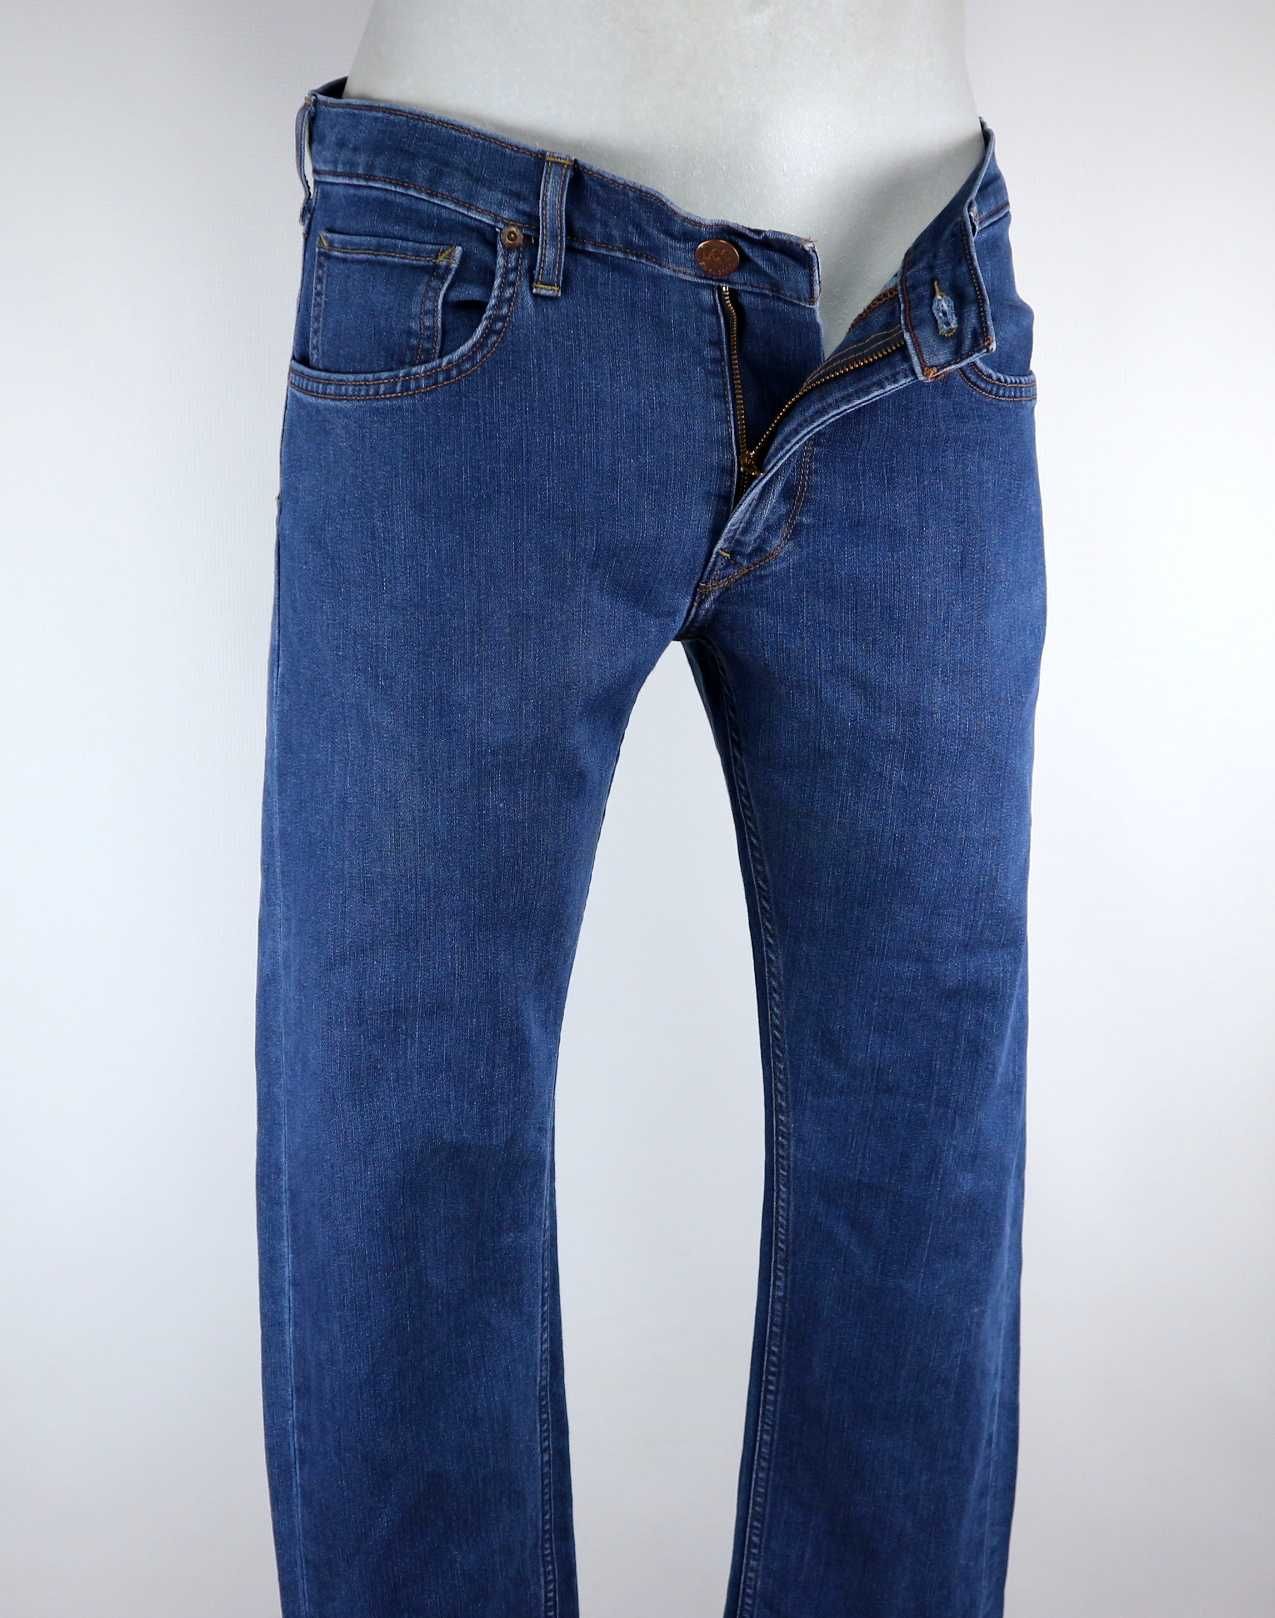 Lee Daren Zip Fly spodnie jeansy W34 L30 pas 2 x 45/47 cm